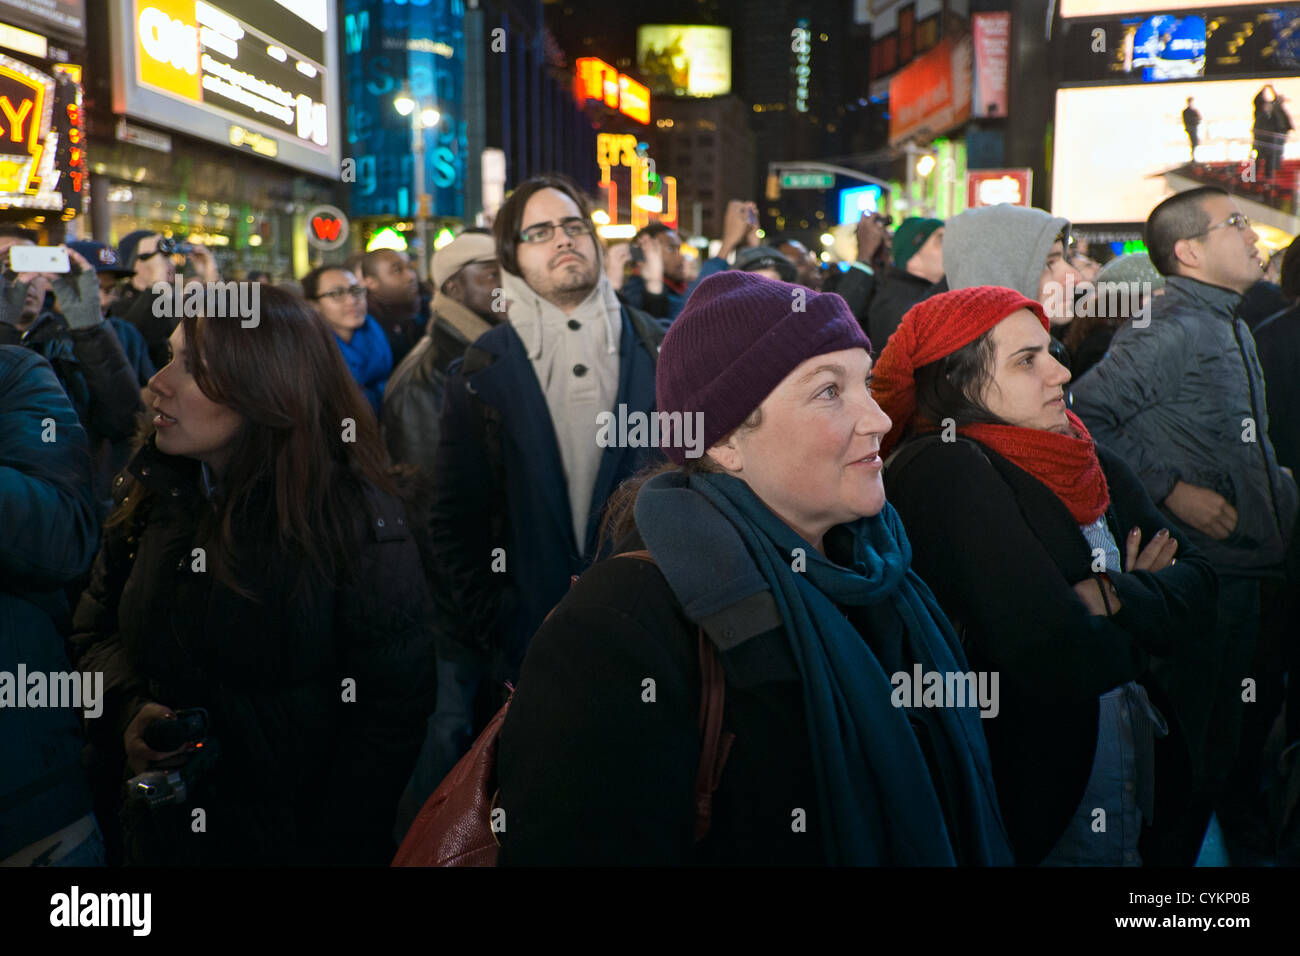 November 7, 2012, New York, NY, USA. I volti della folla in Times Square a New York celebra il Presidente Barack Obama la rielezione di vittoria nel 2012 Stati Uniti elezioni presidenziali. Foto Stock